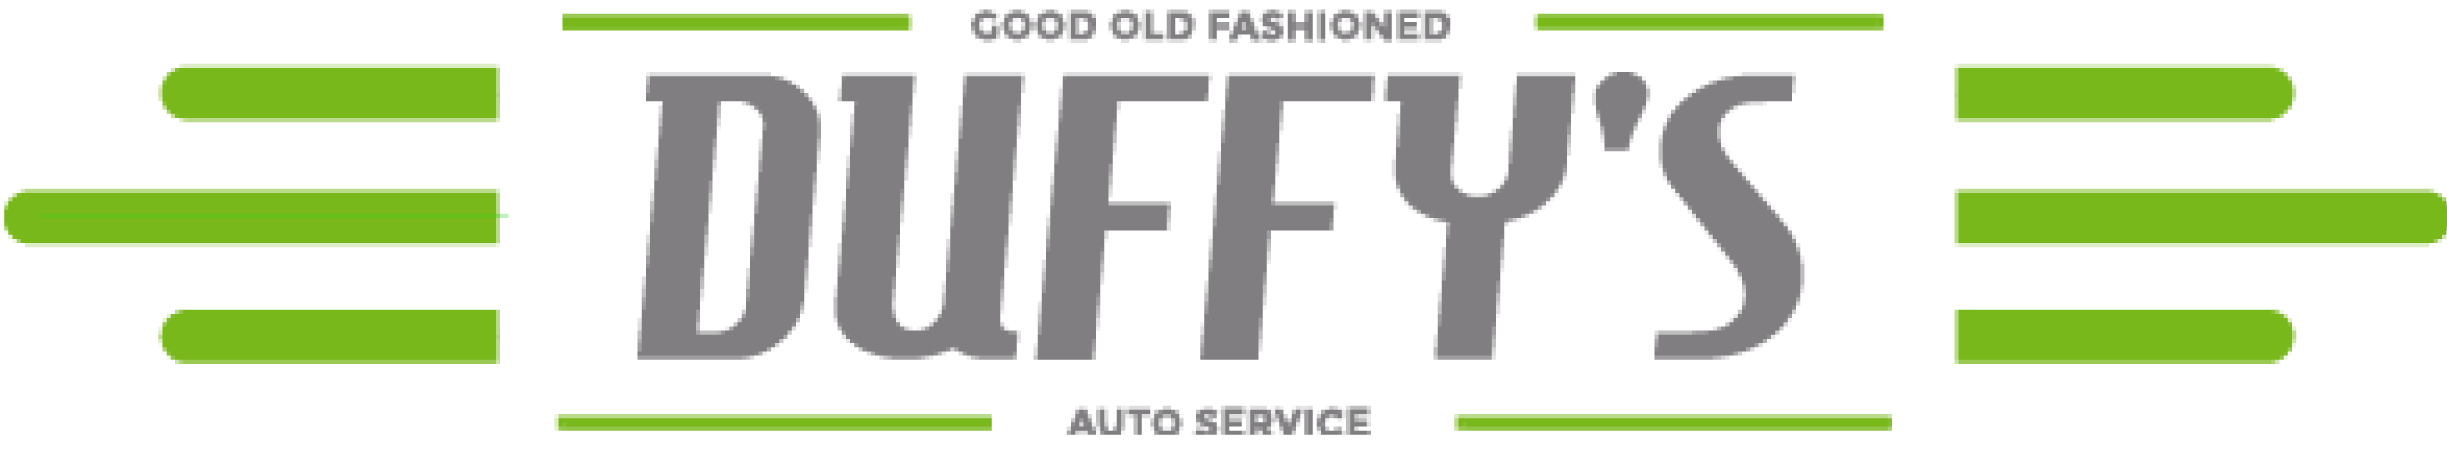 Duffy's Auto Service Logo